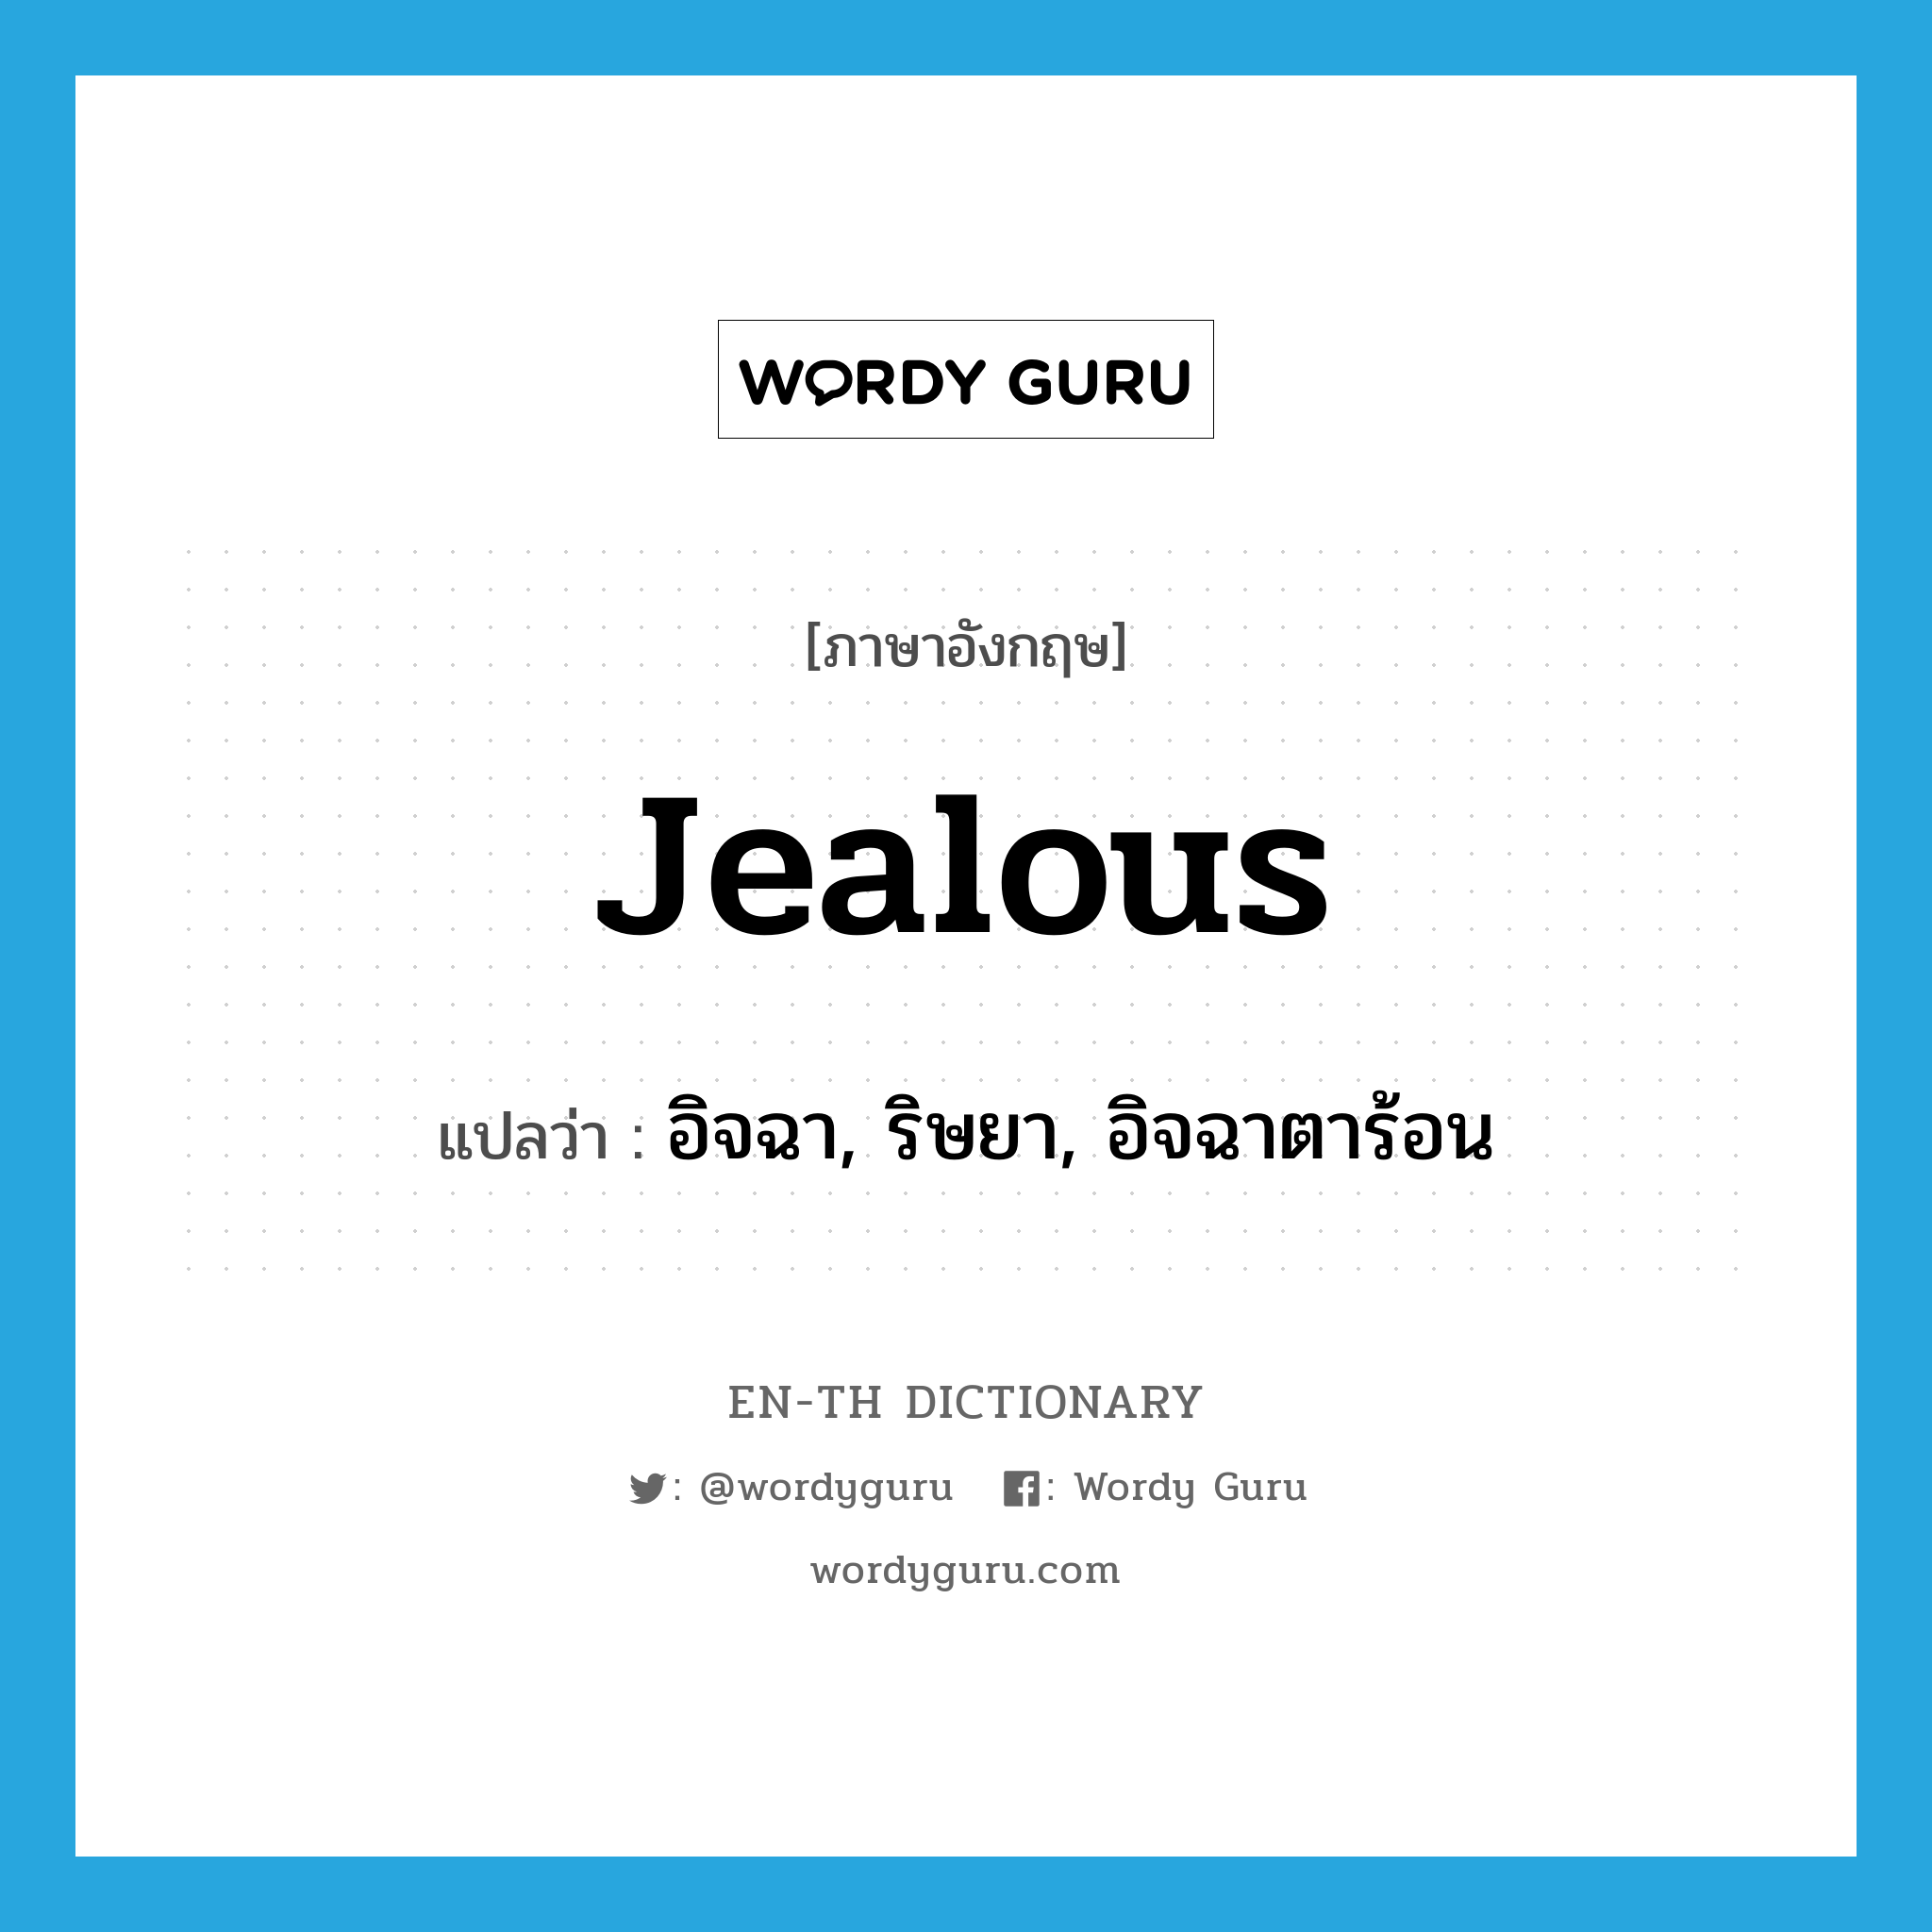 jealous แปลว่า?, คำศัพท์ภาษาอังกฤษ jealous แปลว่า อิจฉา, ริษยา, อิจฉาตาร้อน ประเภท ADJ หมวด ADJ